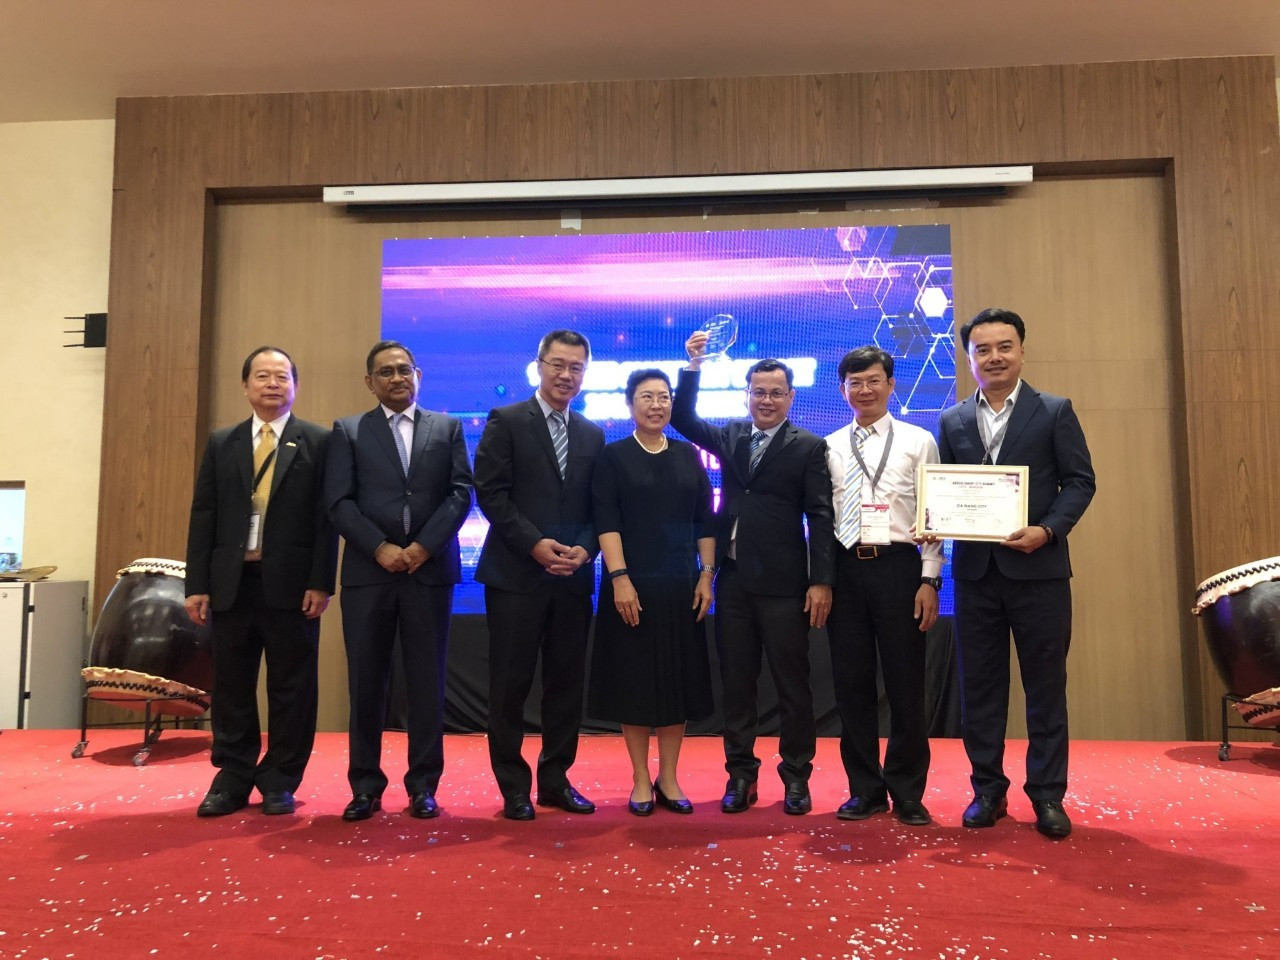 Ông Trần Ngọc Thạch, Phó giám đốc Sở Thông tin và Truyền thông Đà Nẵng, (đứng thứ ba từ phải sang) đại diện nhận giải thưởng Thành phố thông minh ASOCIO 2019